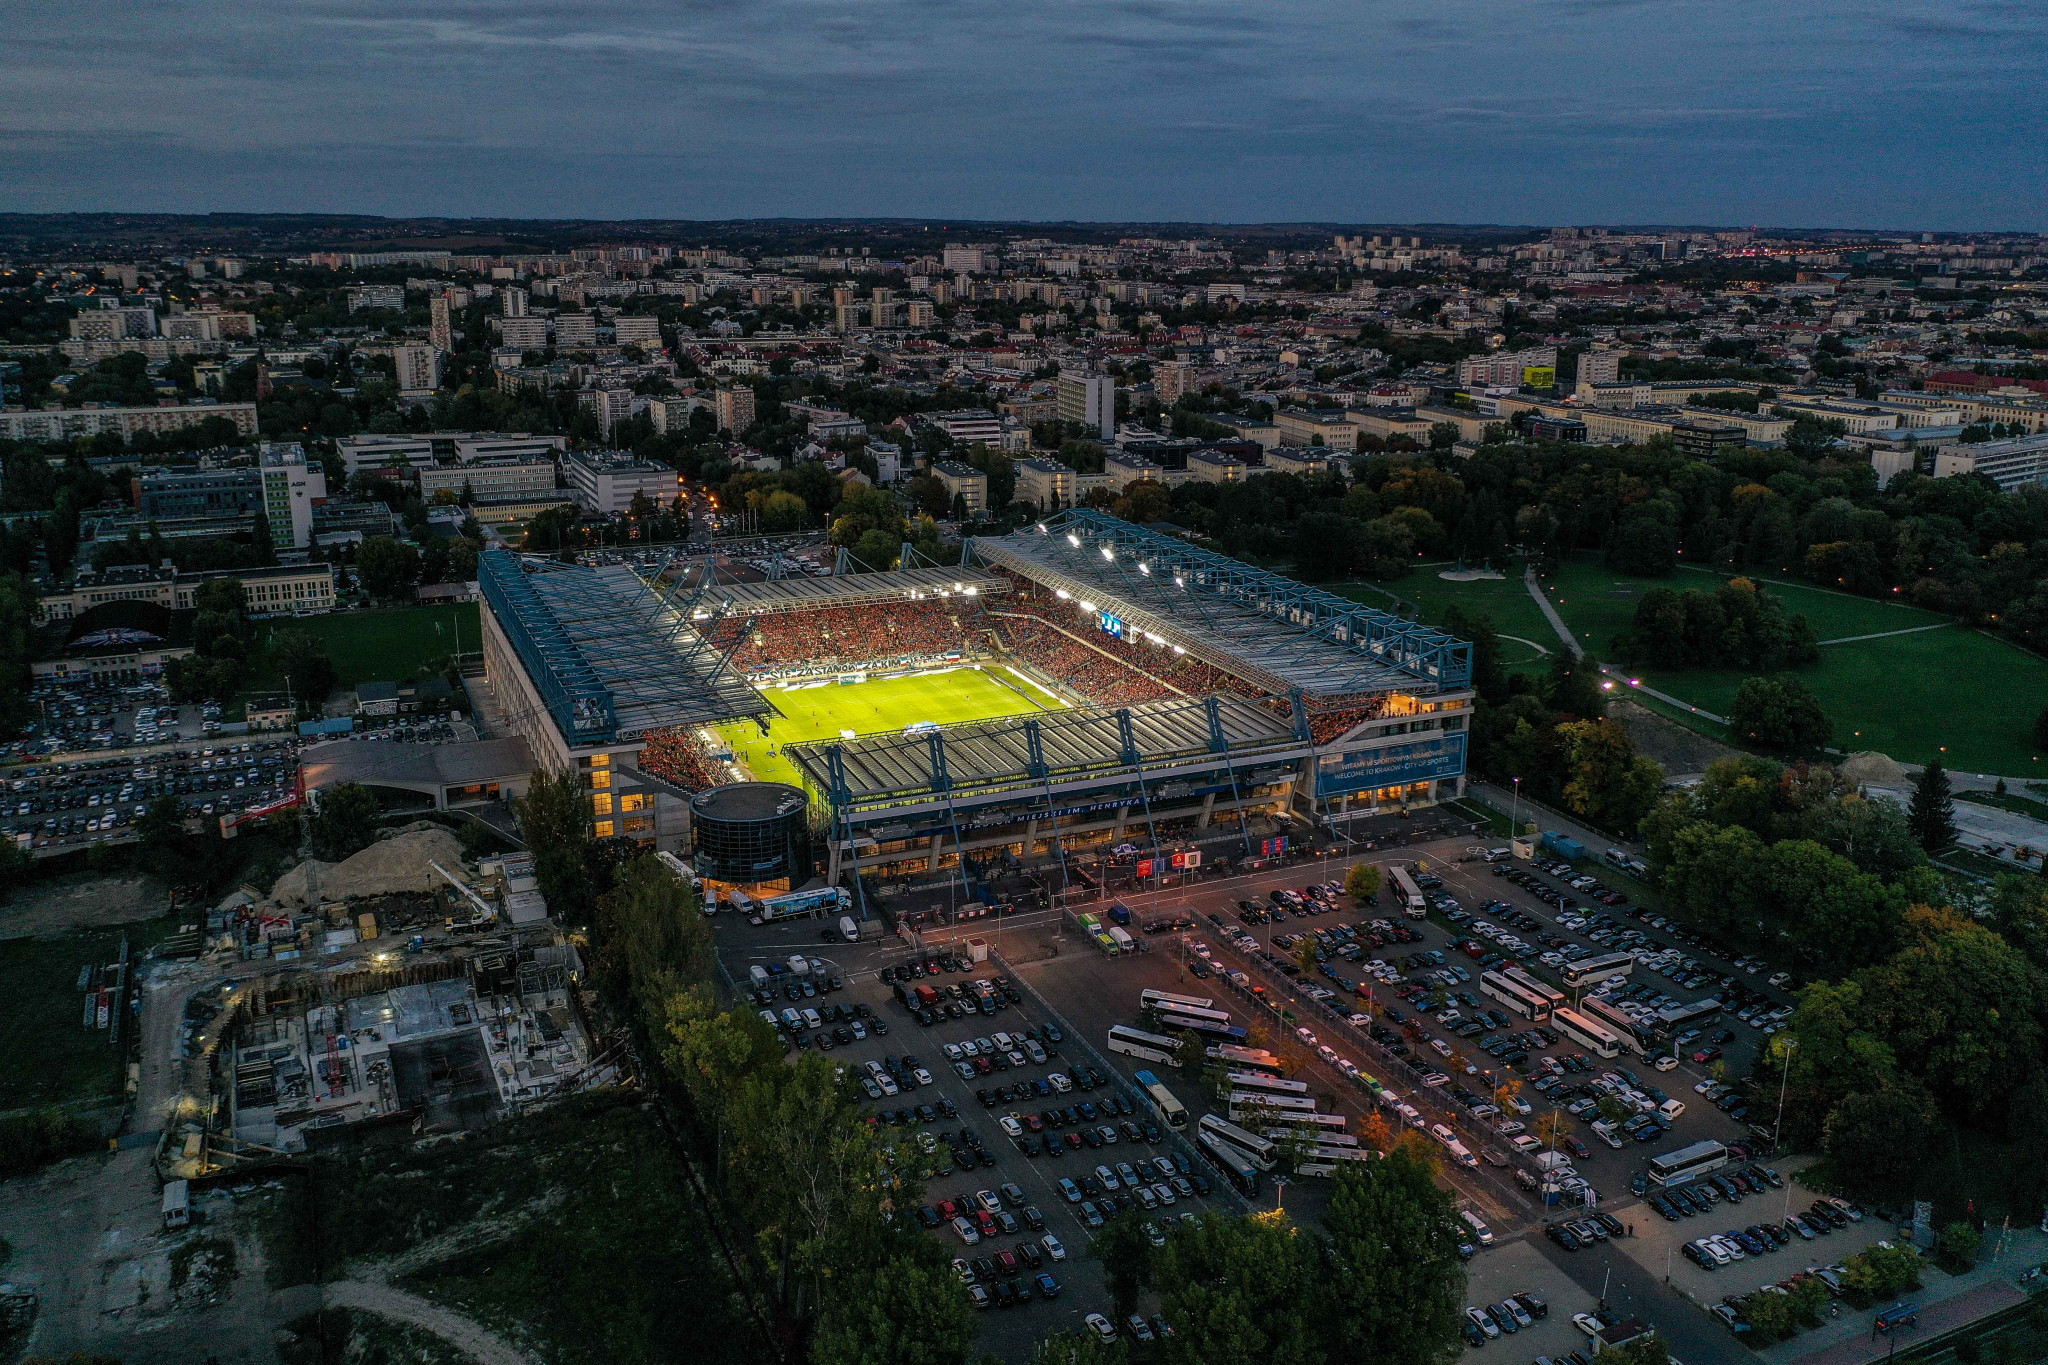 Kraków-Małopolska ready to stage expanded regional European Games with Olympic qualifiers